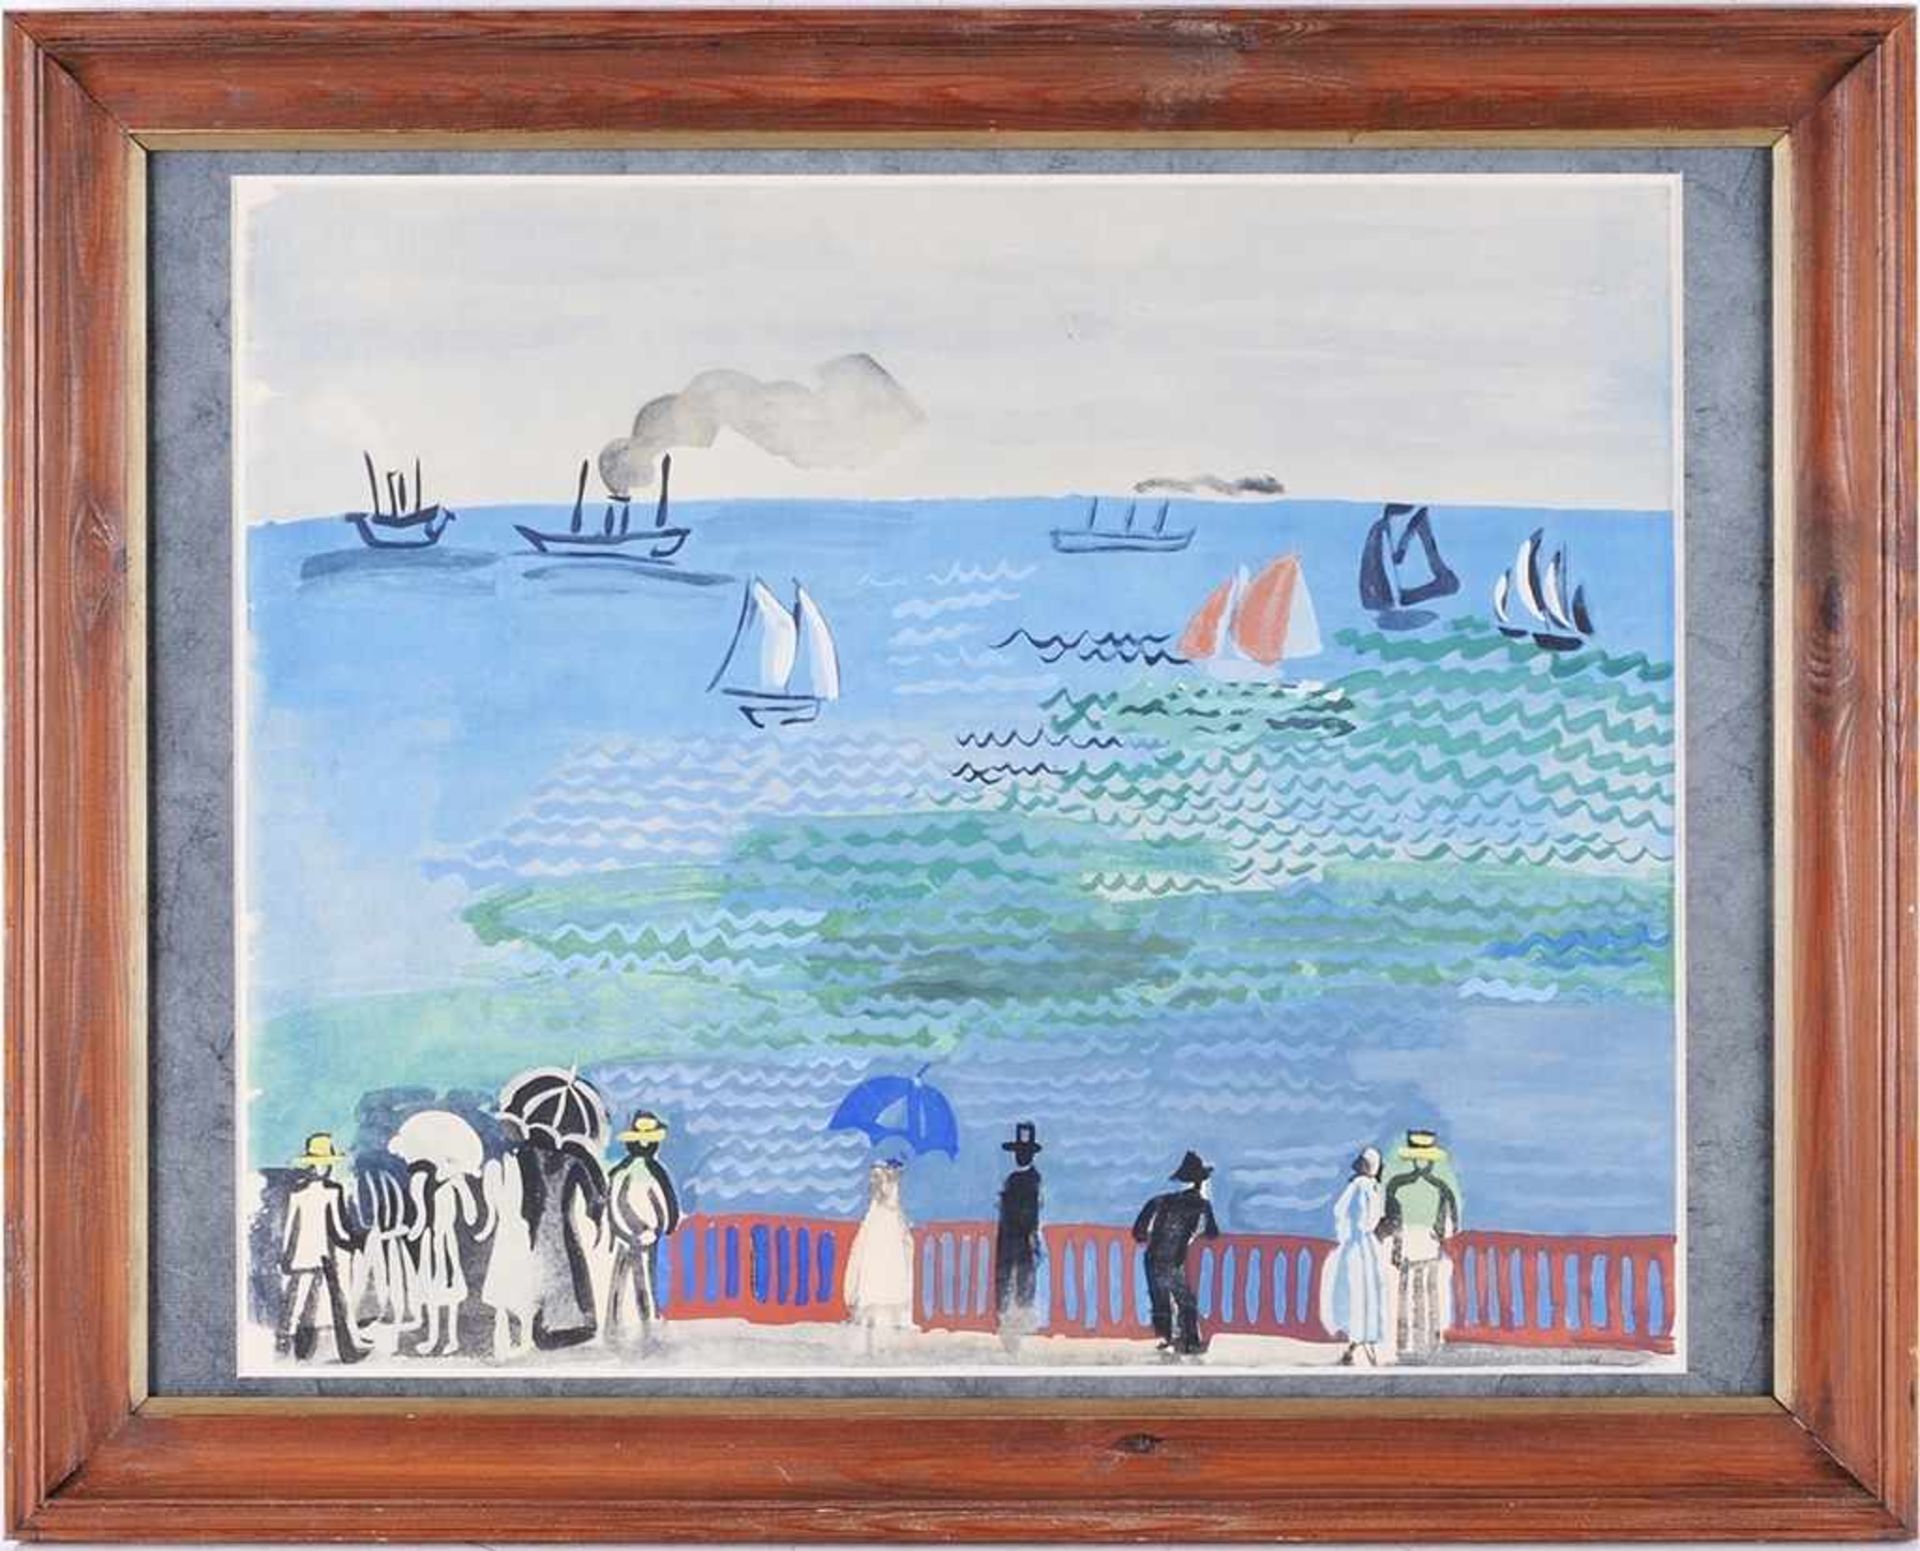 Dufy, Raoul (1877 Le Havre - 1953 Forcalquier) Farblithographie. "La mer au Havre". Rücks.